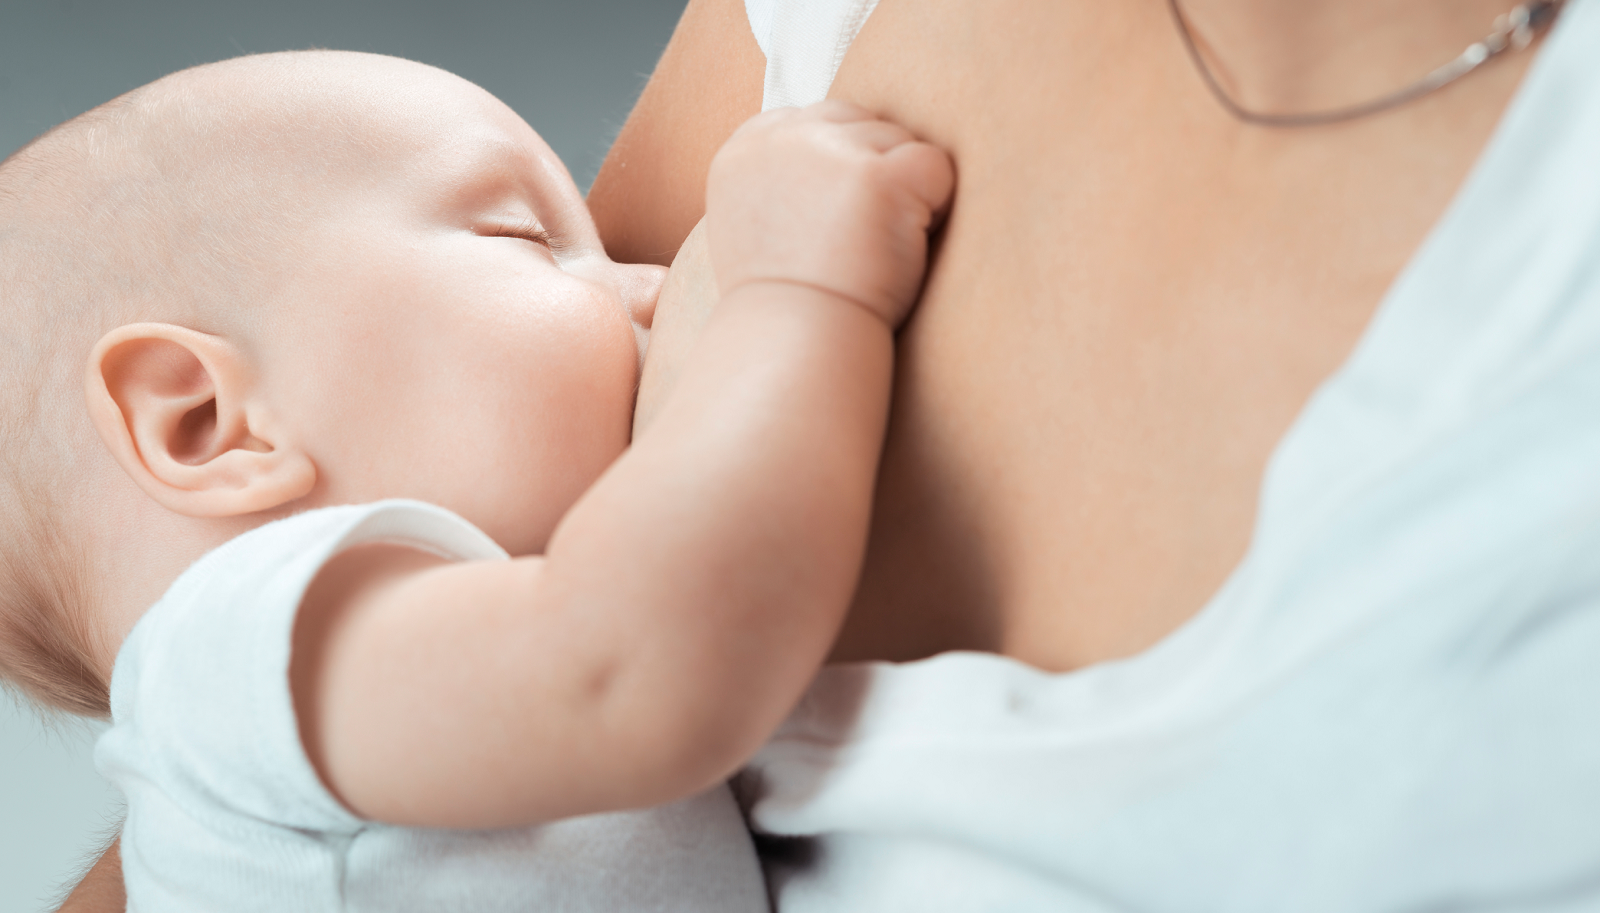 Αποκλειστικός μητρικός θηλασμός: Ασφαλής, υγιής και εφαρμόσιμος - mitrikosthilasmos.com